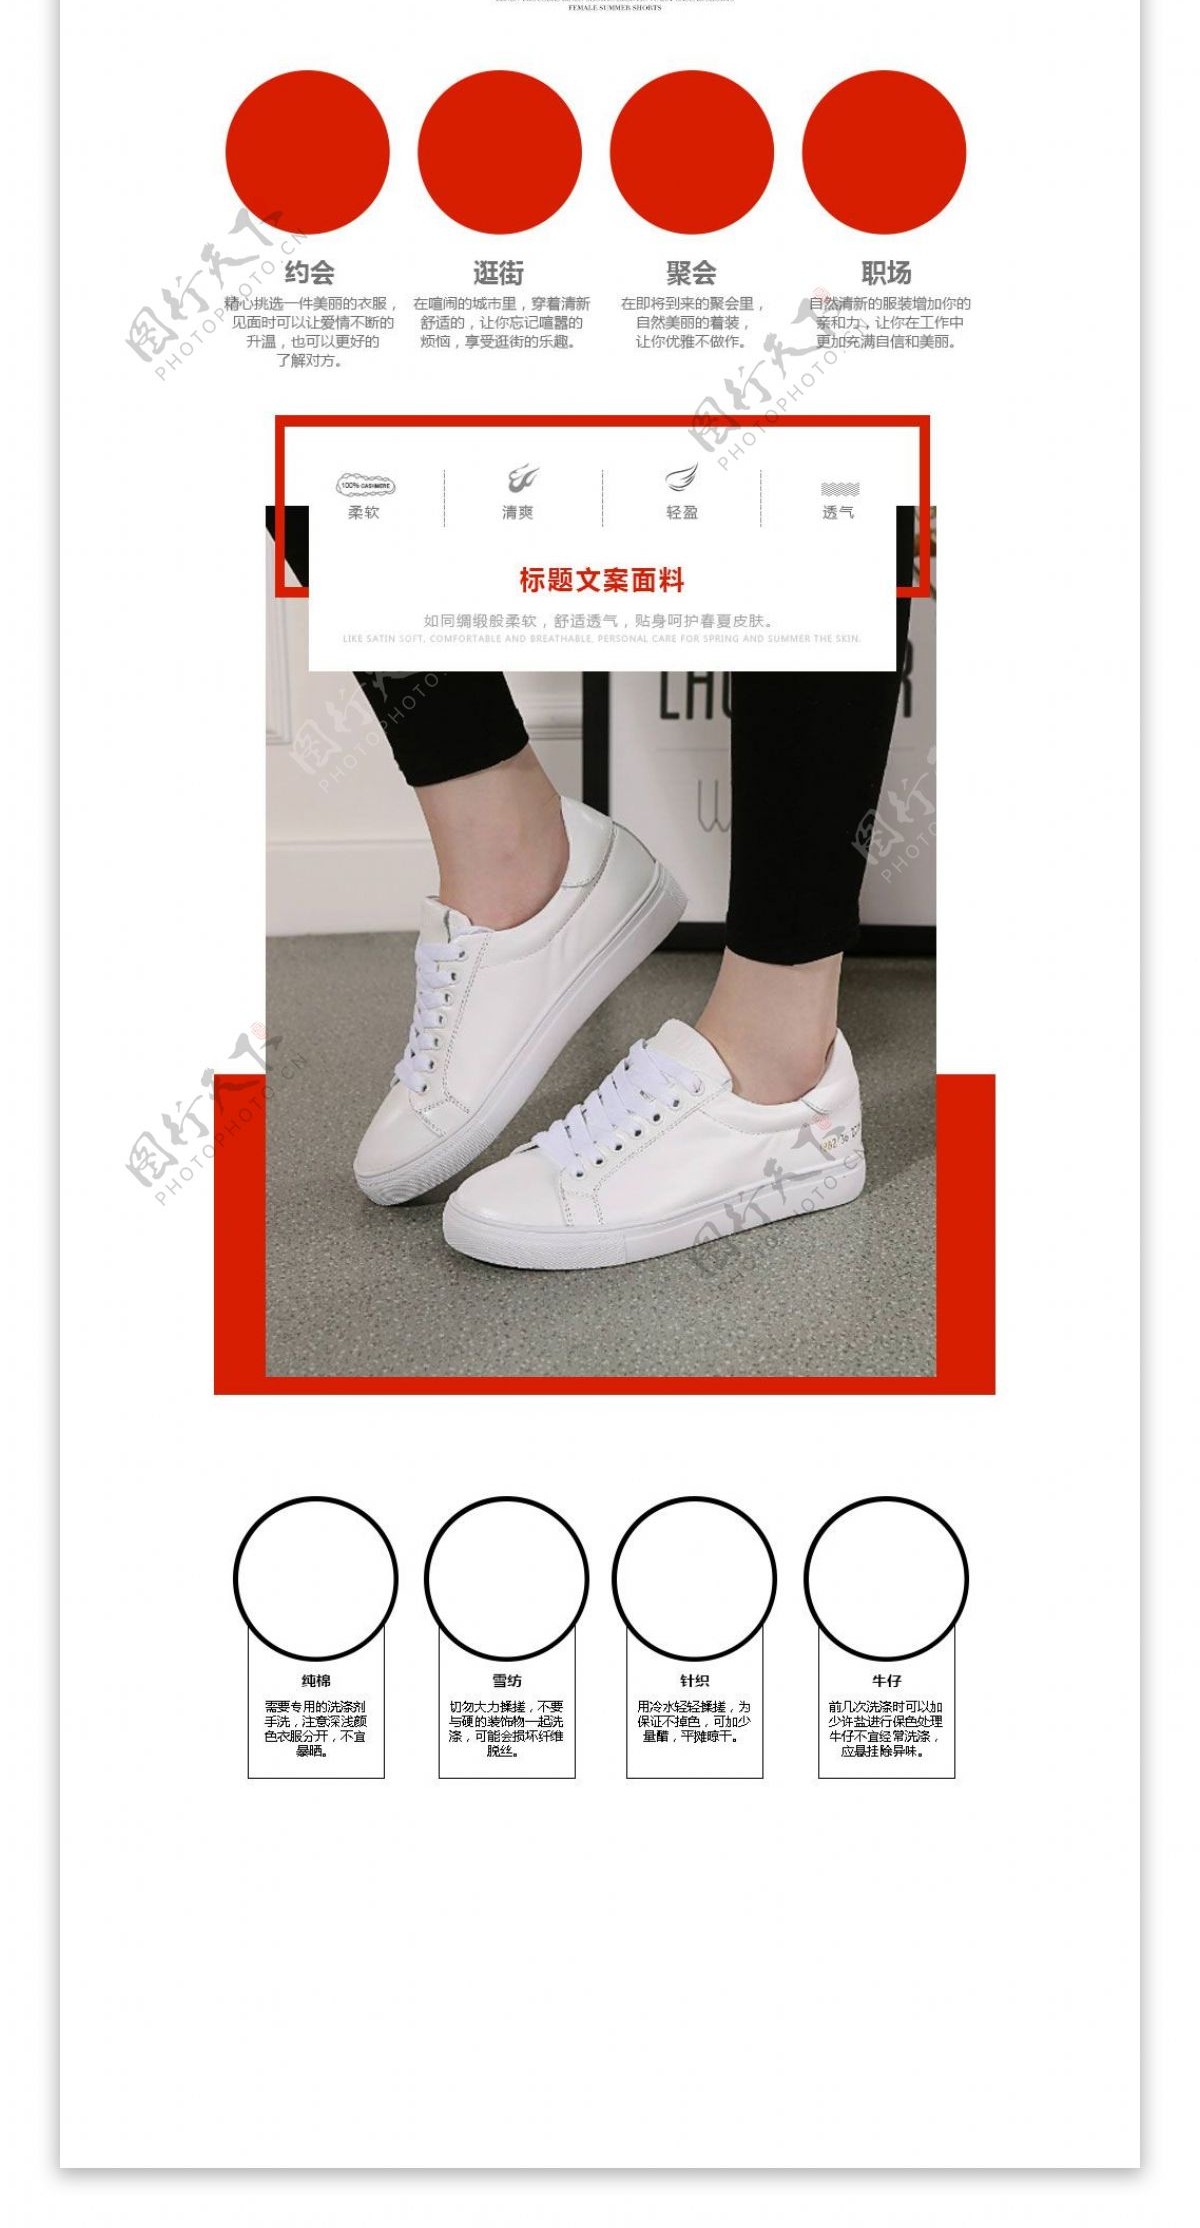 鞋子运动鞋小白鞋详情页PSD模板源文件